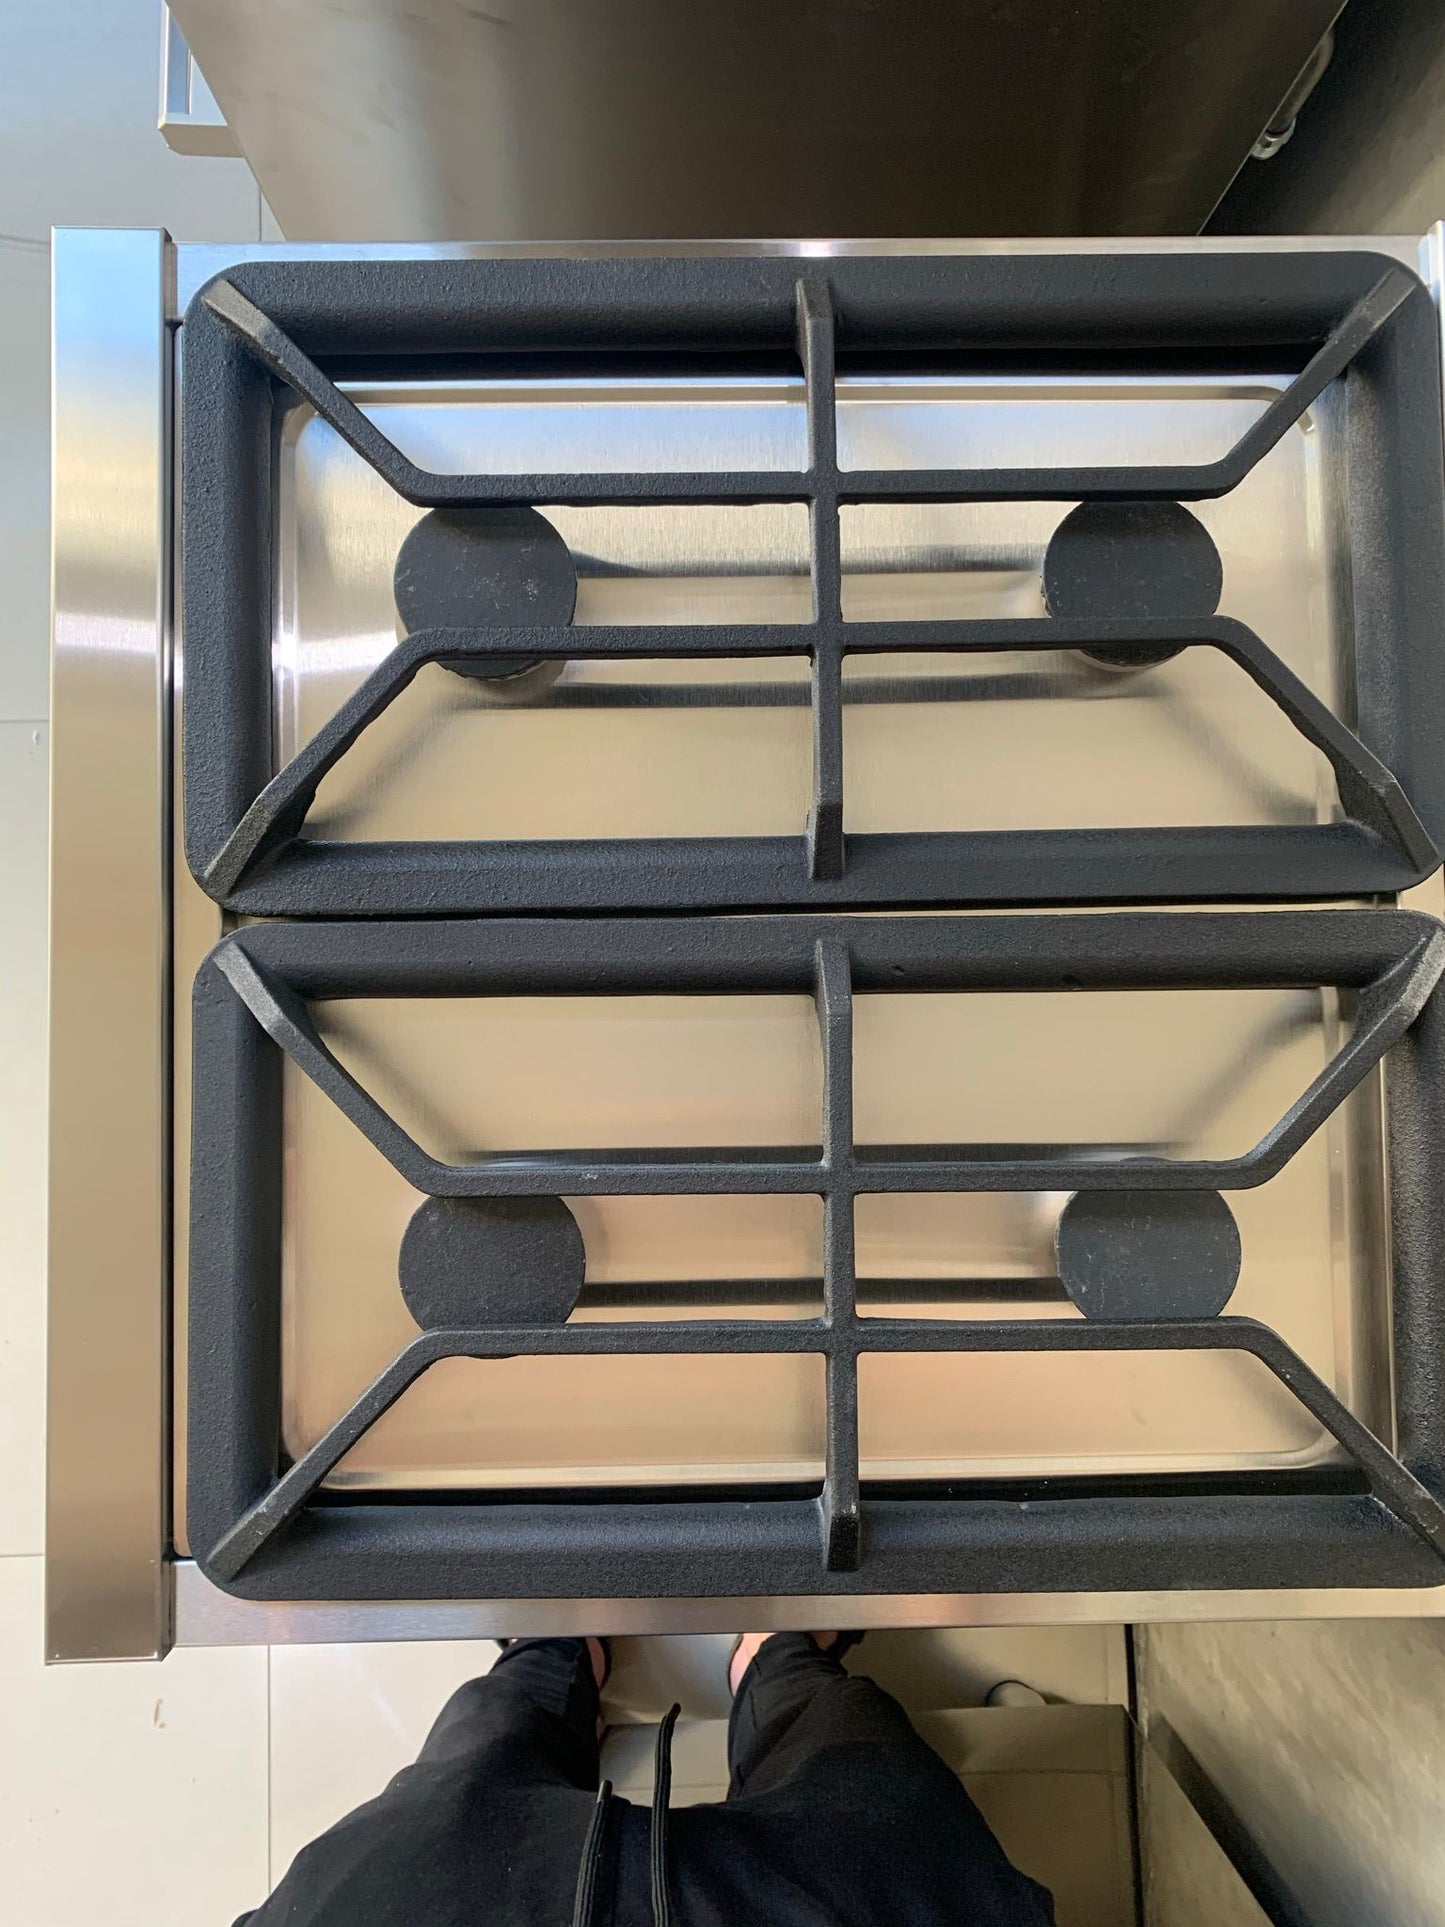 Cocina Semi Industrial con Puerta Visor de Vidrio 55 cm Cook & Food